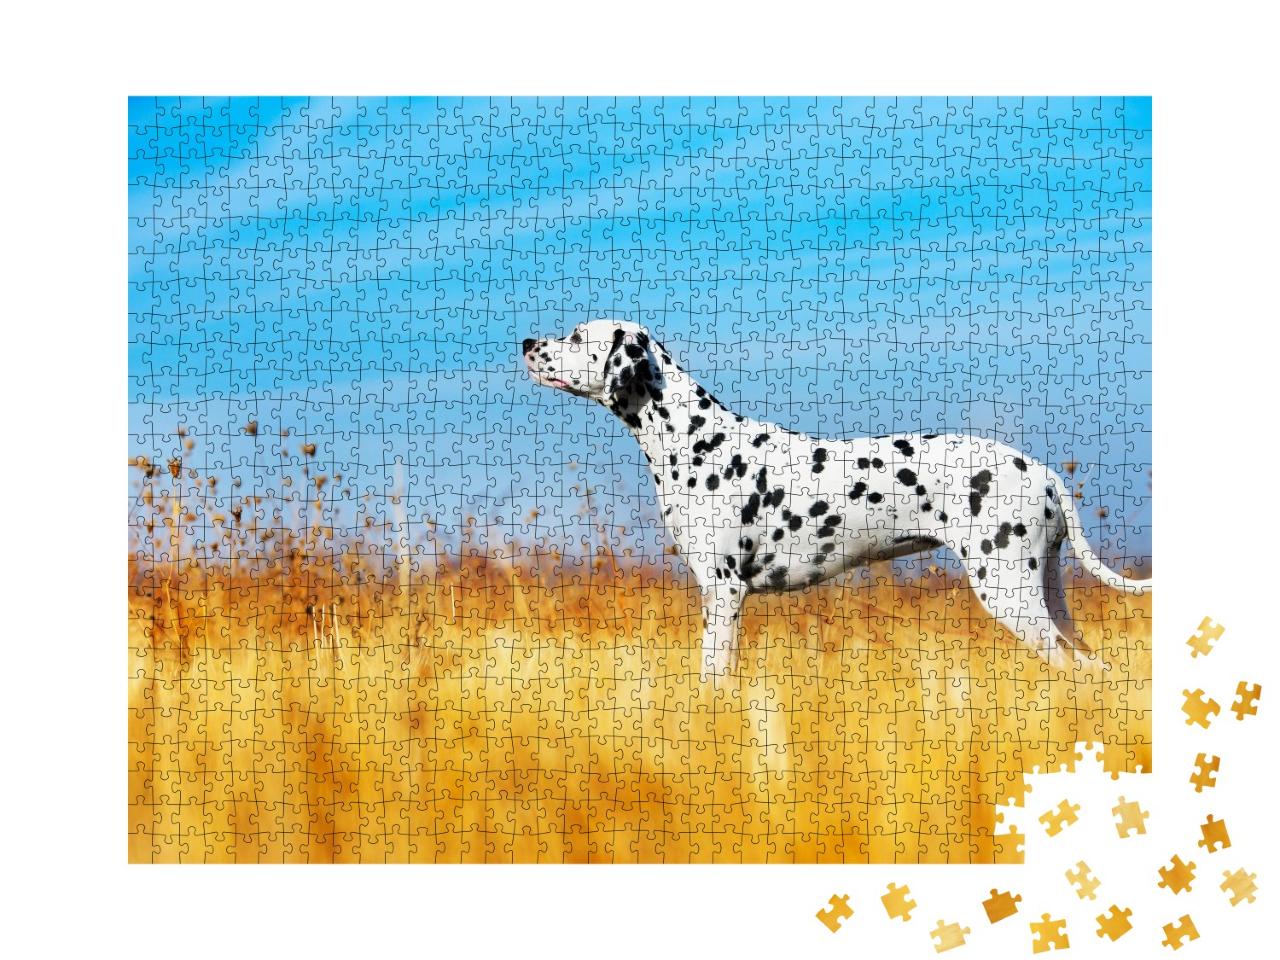 Puzzle de 1000 pièces « Beau dalmatien dans un champ »